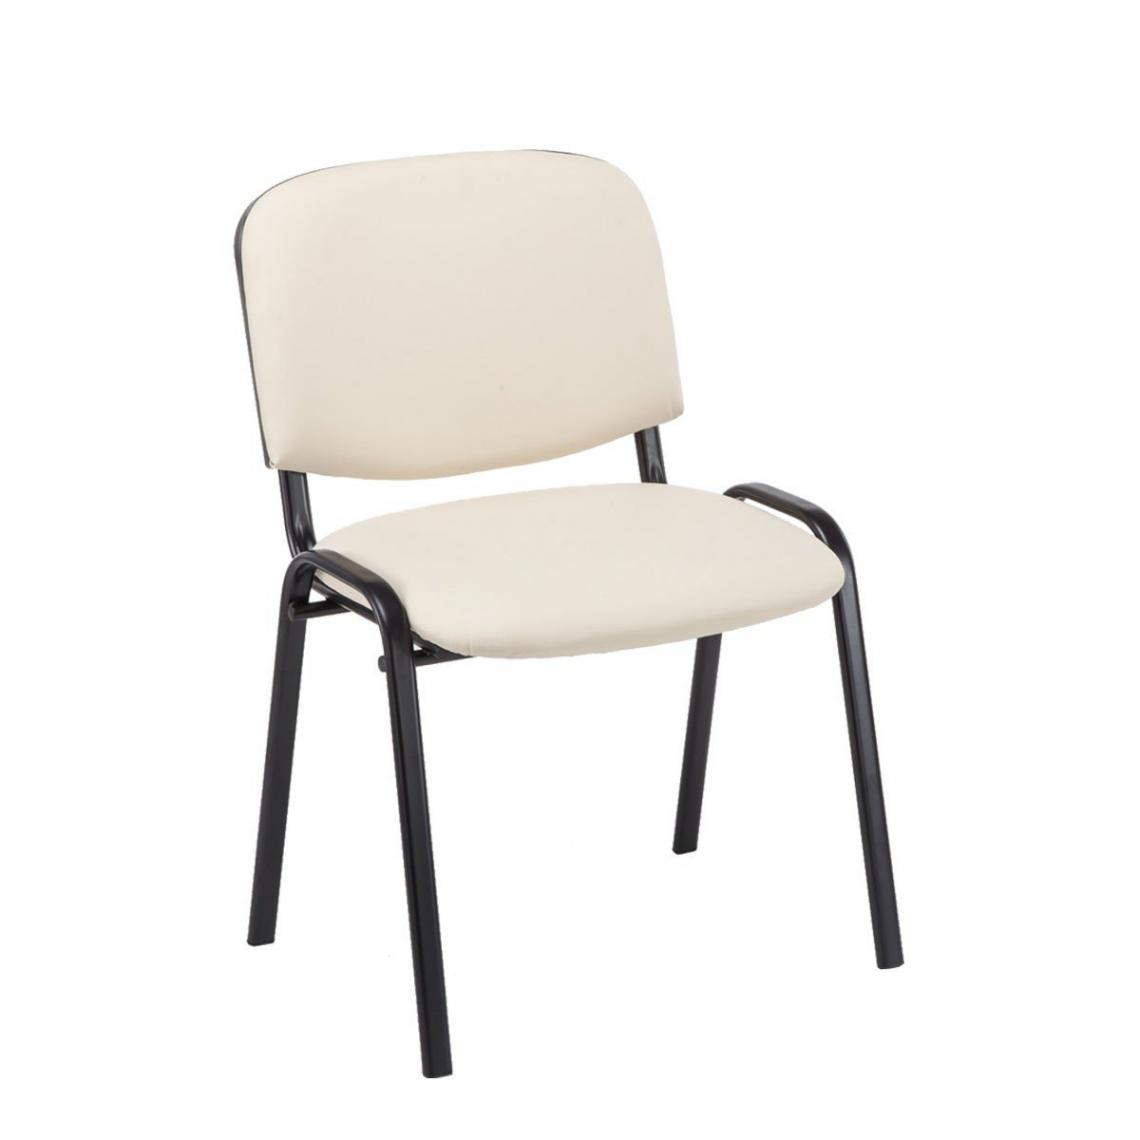 Decoshop26 - Chaise visiteur assise rembourrée en simili-cuir crème BUR10072 - Chaises